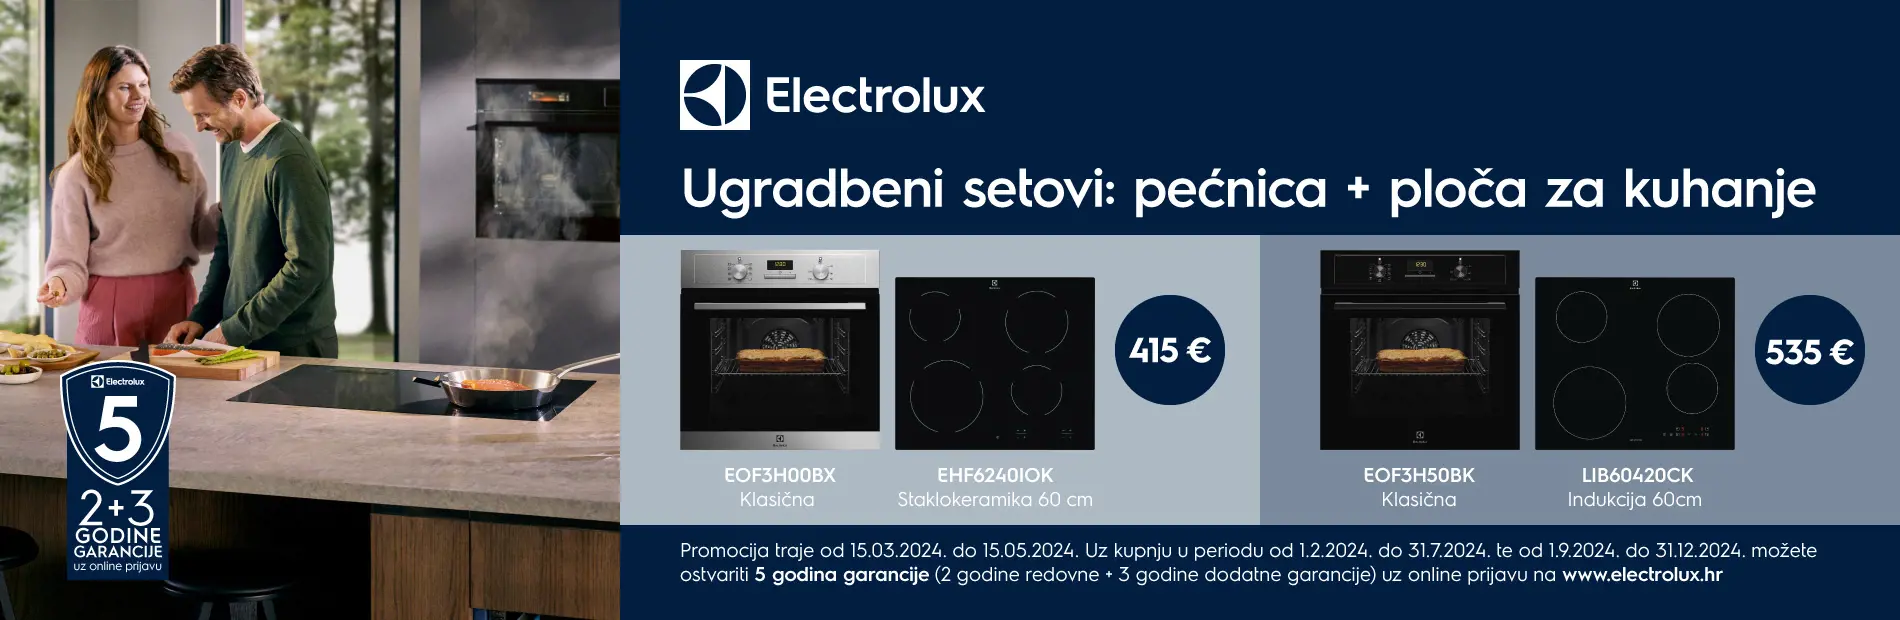 Electrolux promocija